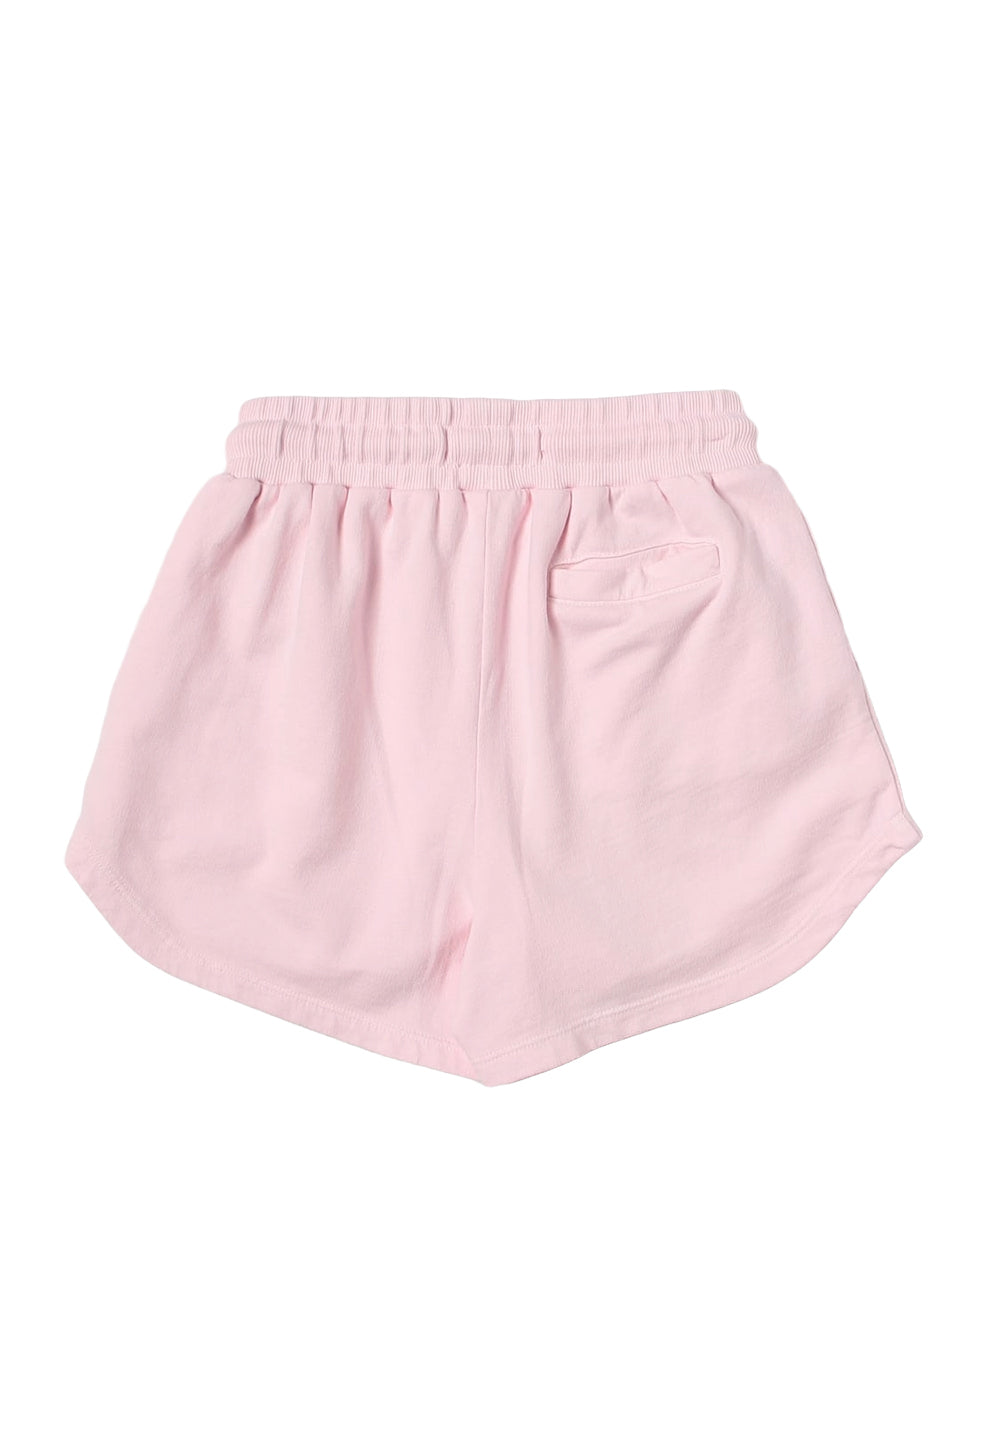 Short felpa rosa per bambina - Primamoda kids